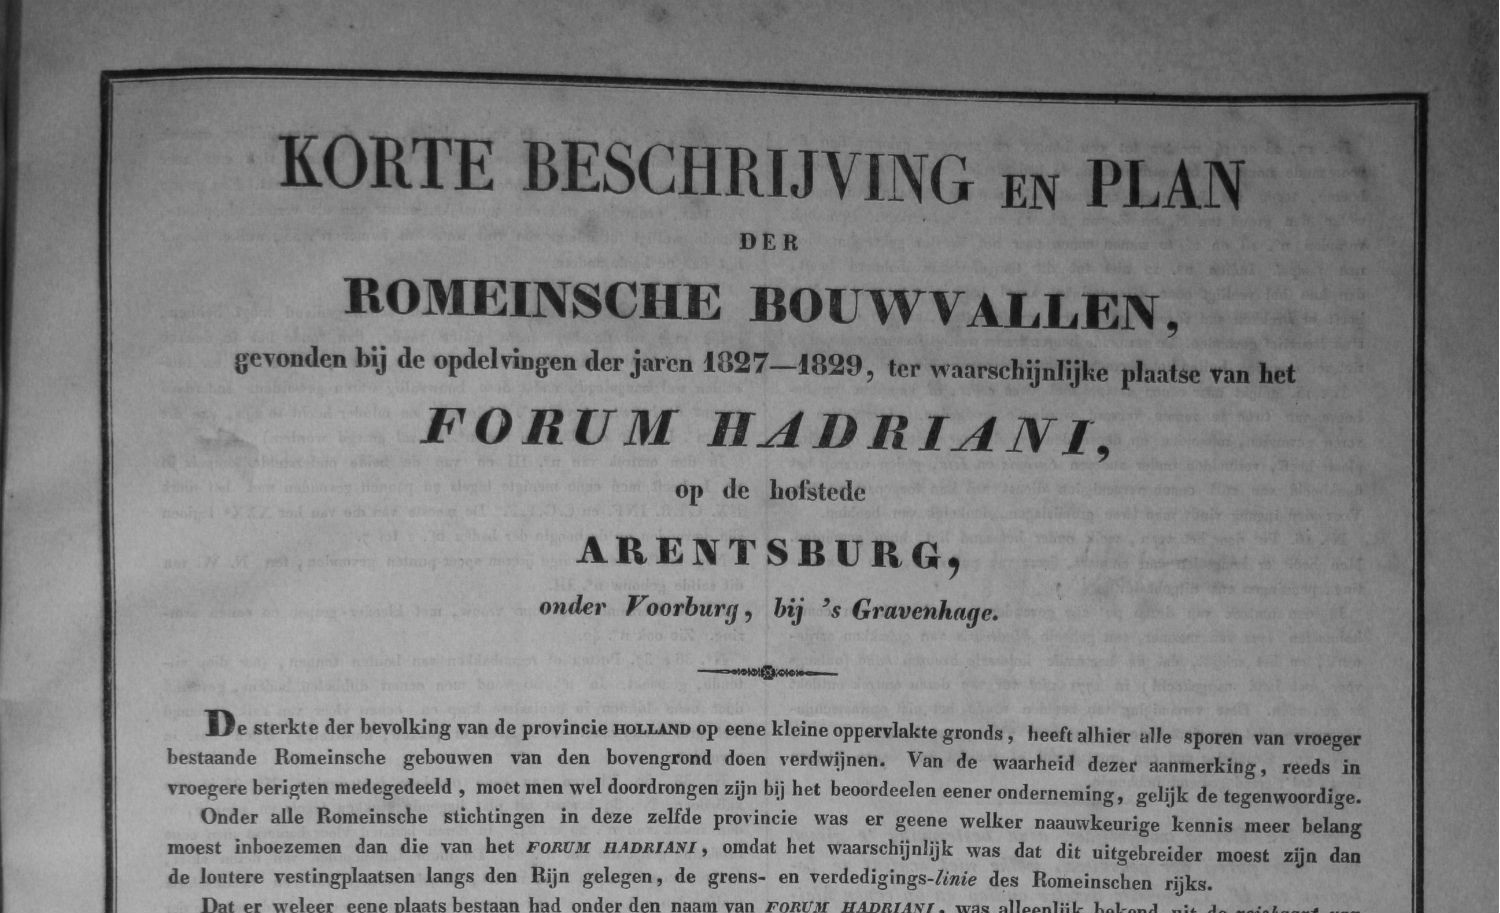 Korte beschrijving en plan der Romeinsche bouwvallen, gevonden bij de opdelvingen der jaren 1827-1829, ter waarschijnlijke plaatse van het Forum Hadriani, op de hofstede Arentsburg, onder Voorburg, bij ’s Gravenhage. (MM 134 B 015)